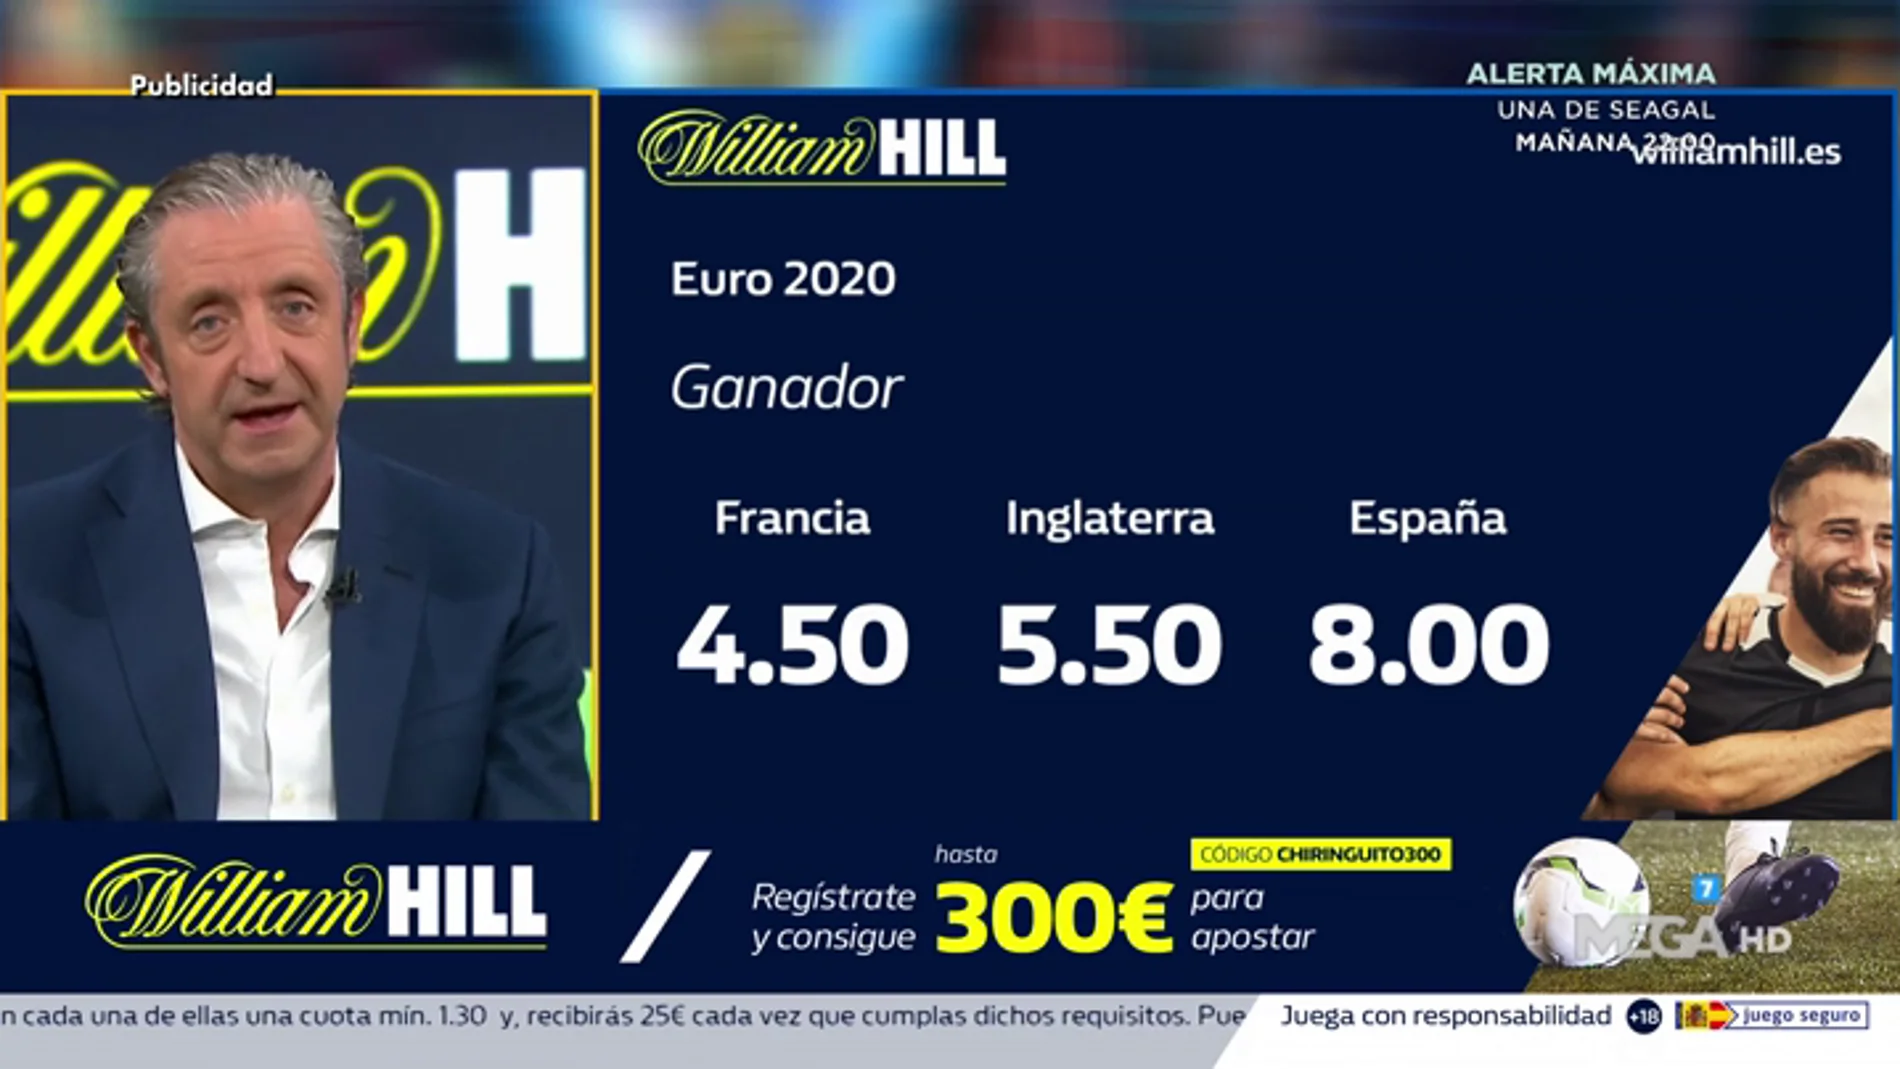  Josep te trae la mejor oferta de registro para que apuestes con William Hill